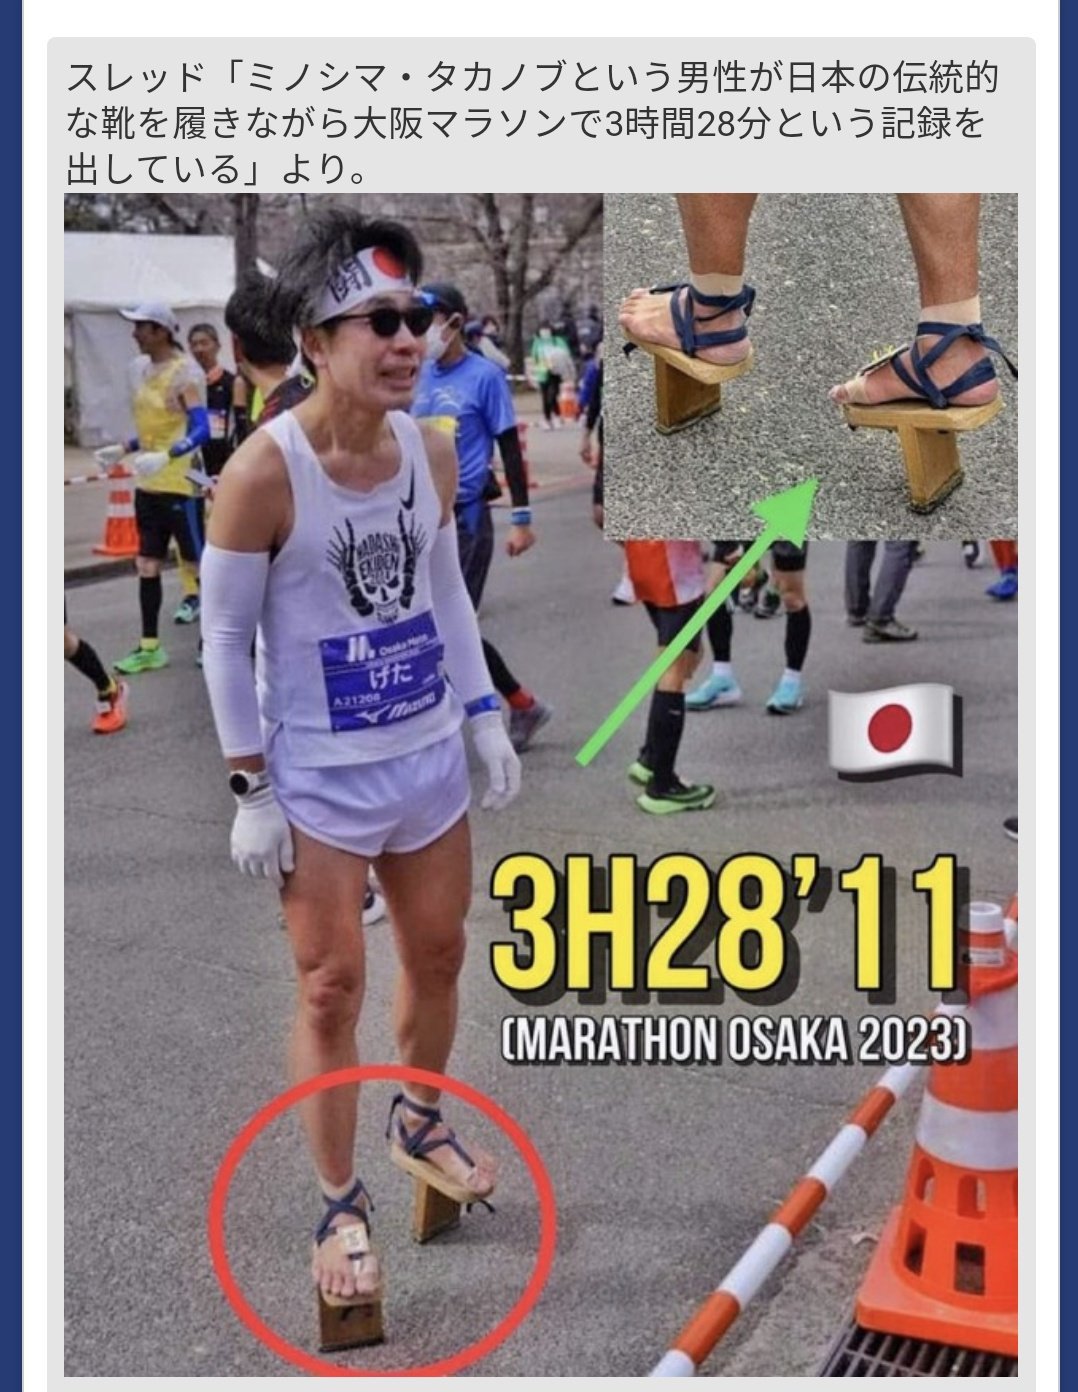 오사카 마라톤 대회에서 기인 등장